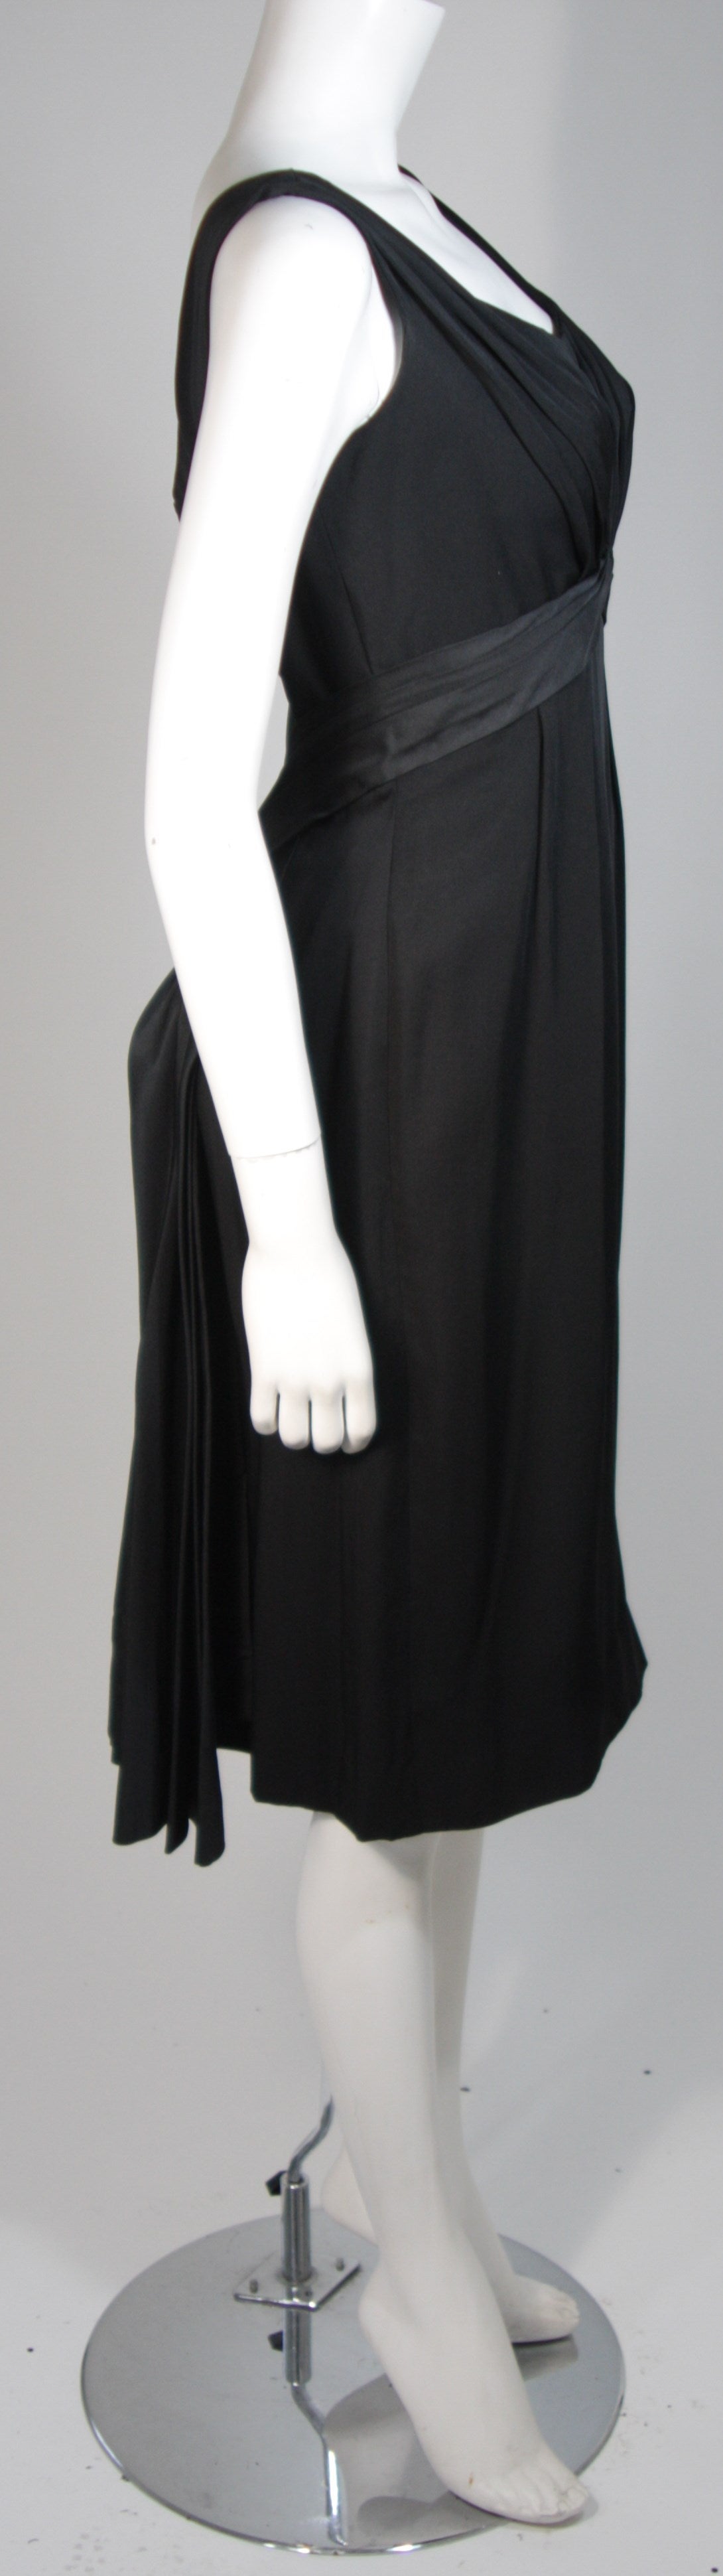 Women's Ceil Chapman 1950's Black Cocktail Draped Cocktail Dress Size S For Sale